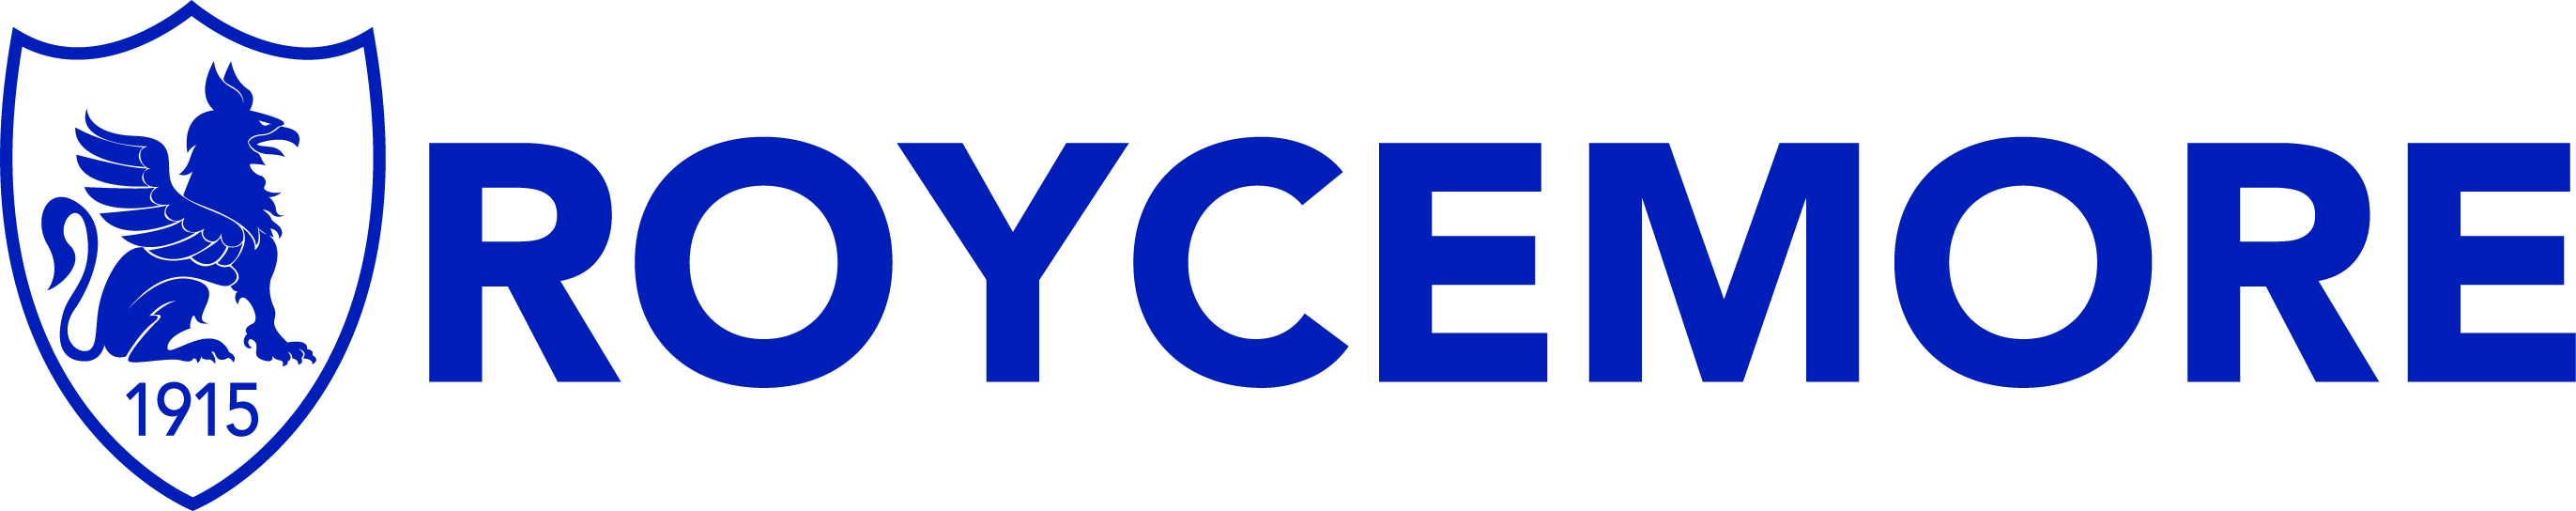 Roycemore School logo